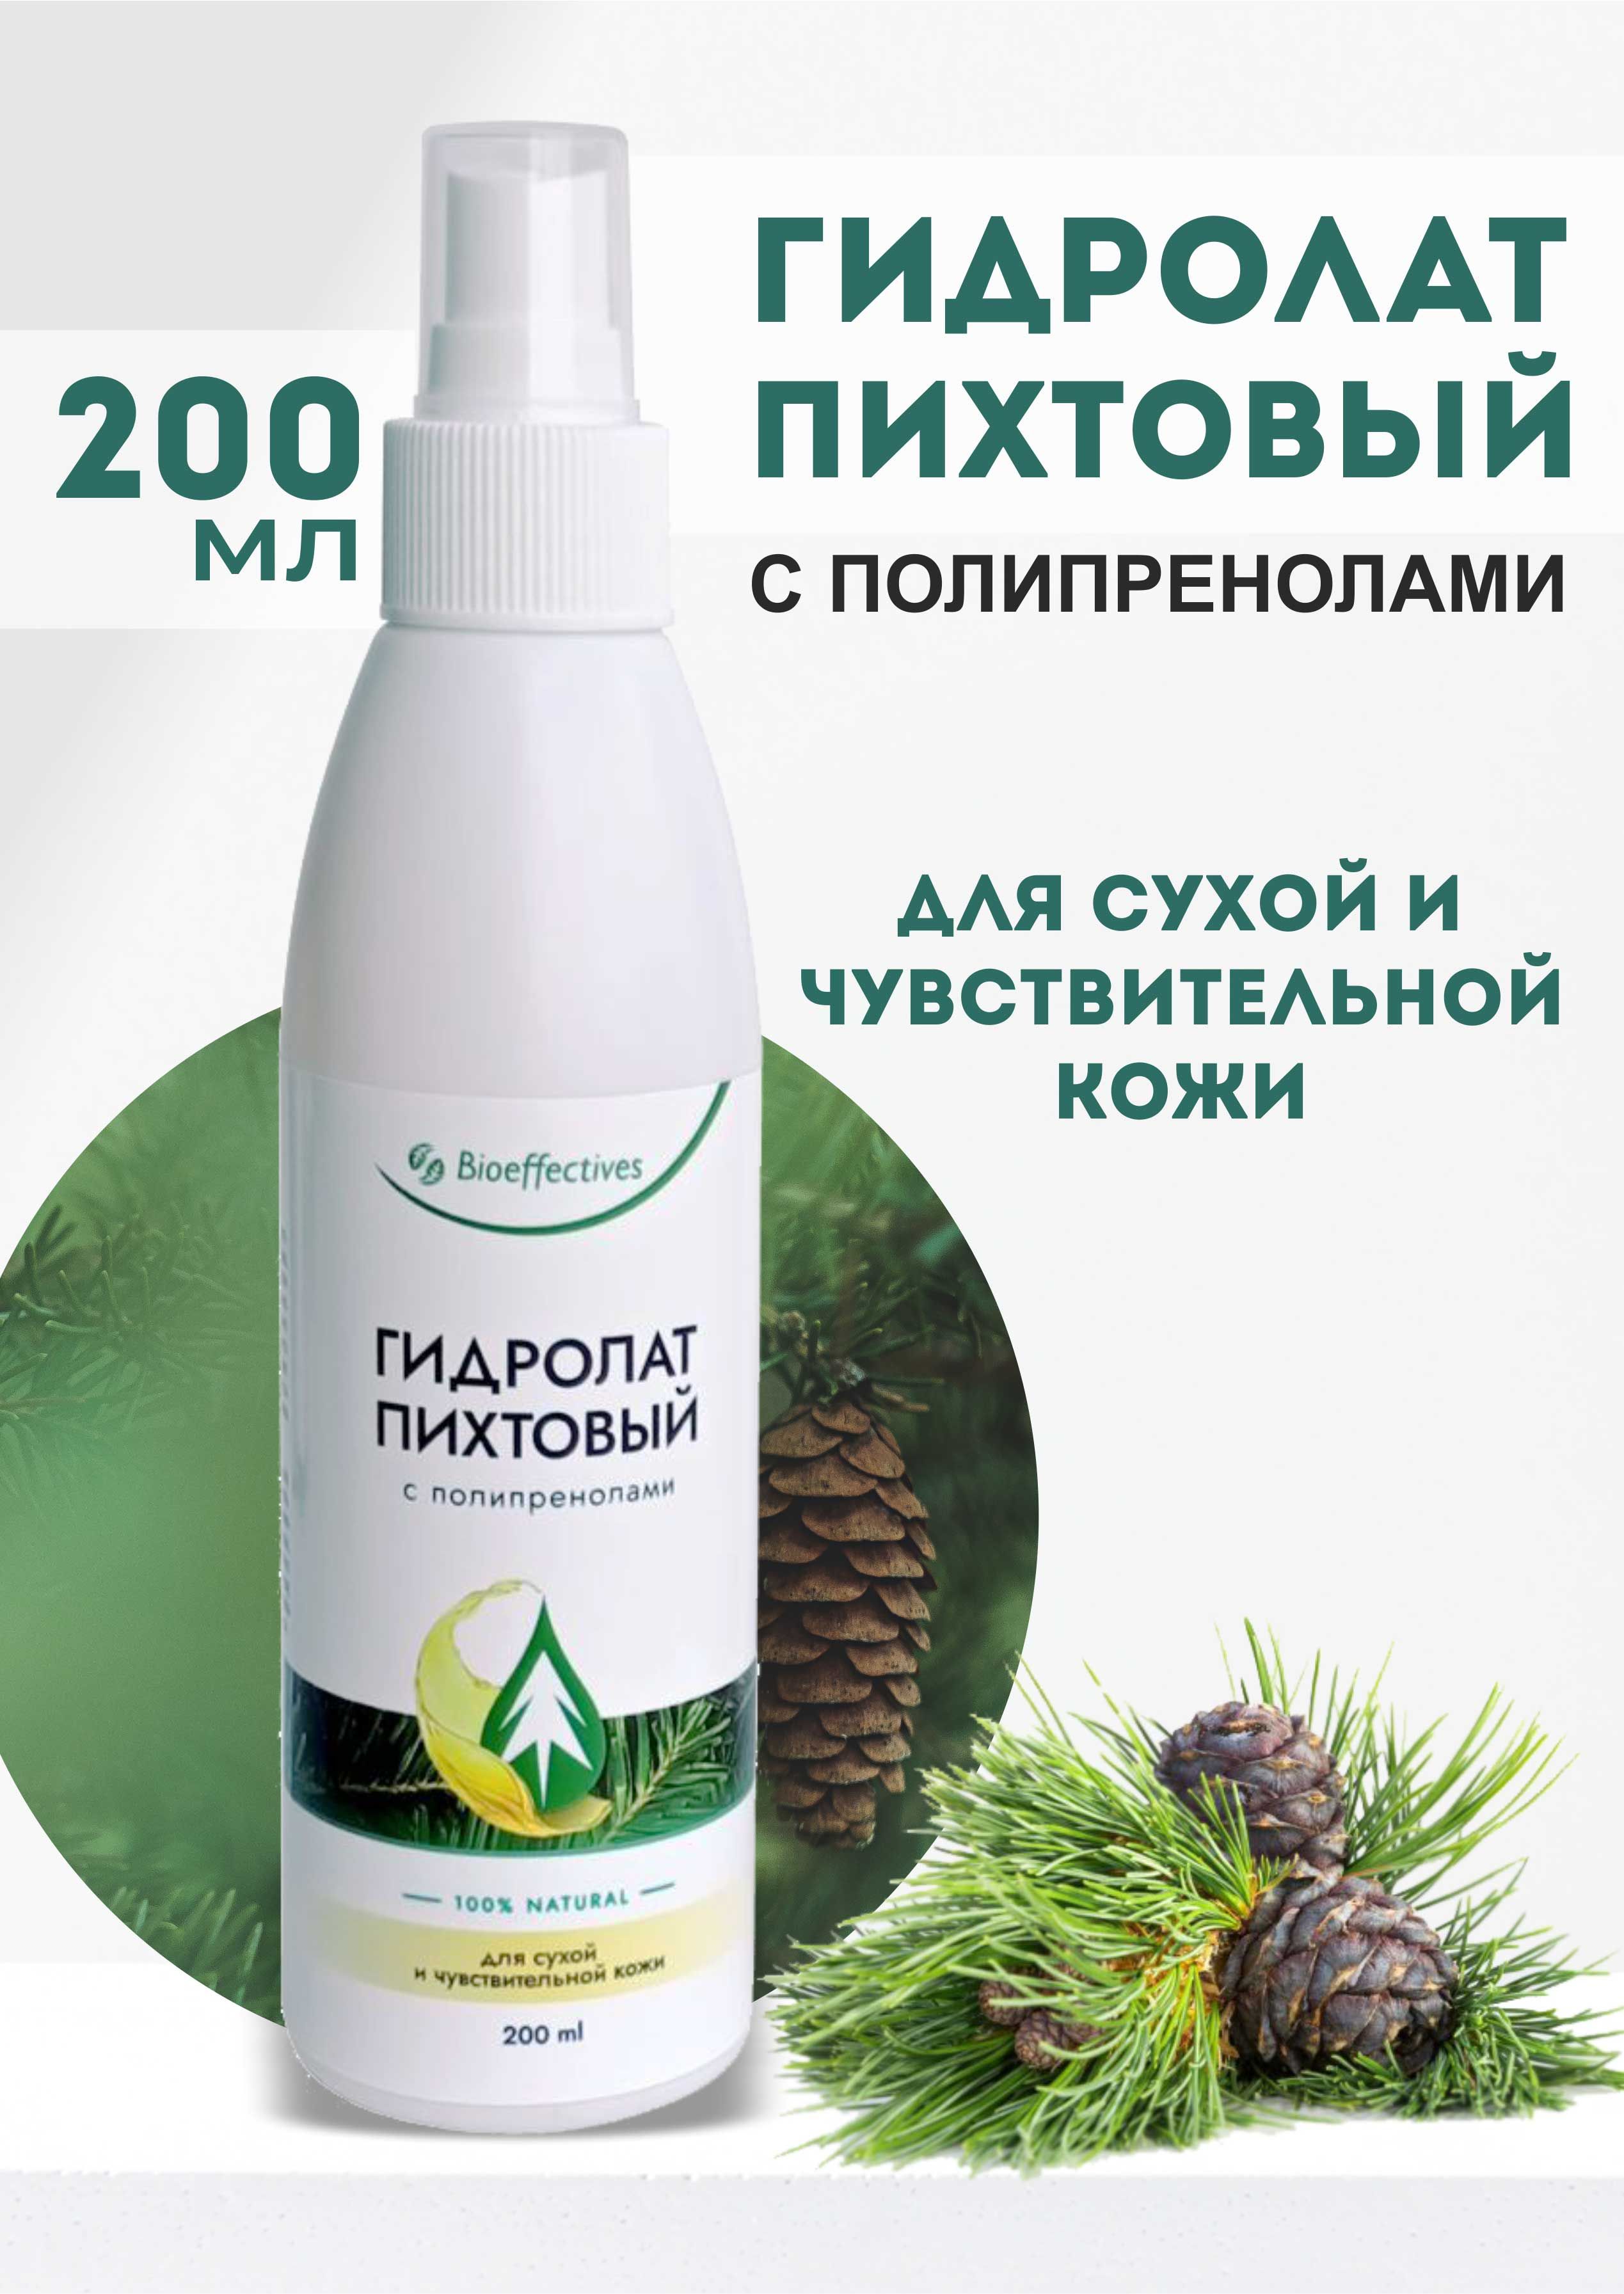 Гидролат пихтовый с полипренолами для сухой и чувствительной кож, 200 мл., Bioeffectives